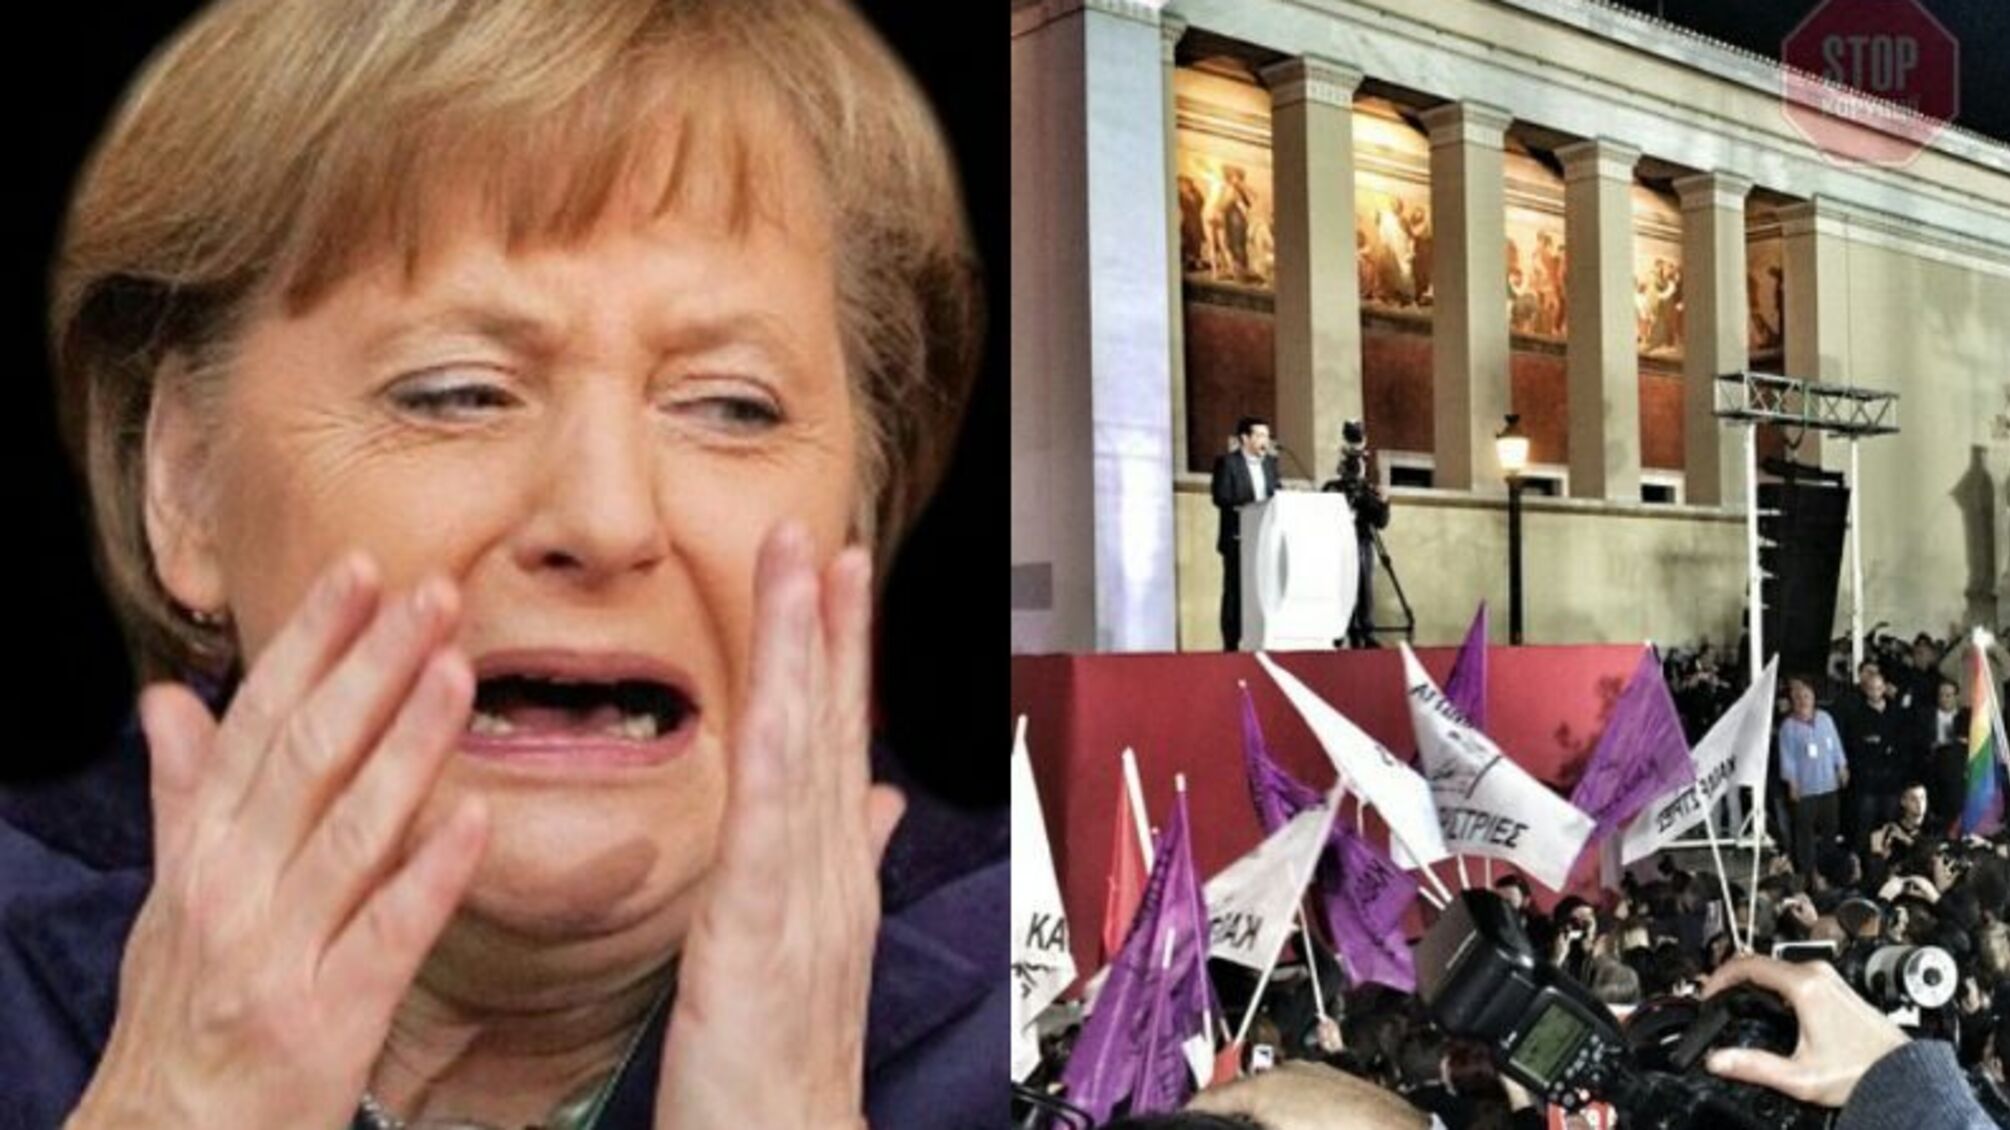 Вибори в Німеччині: поразка блоку Меркель за підрахунками голосів